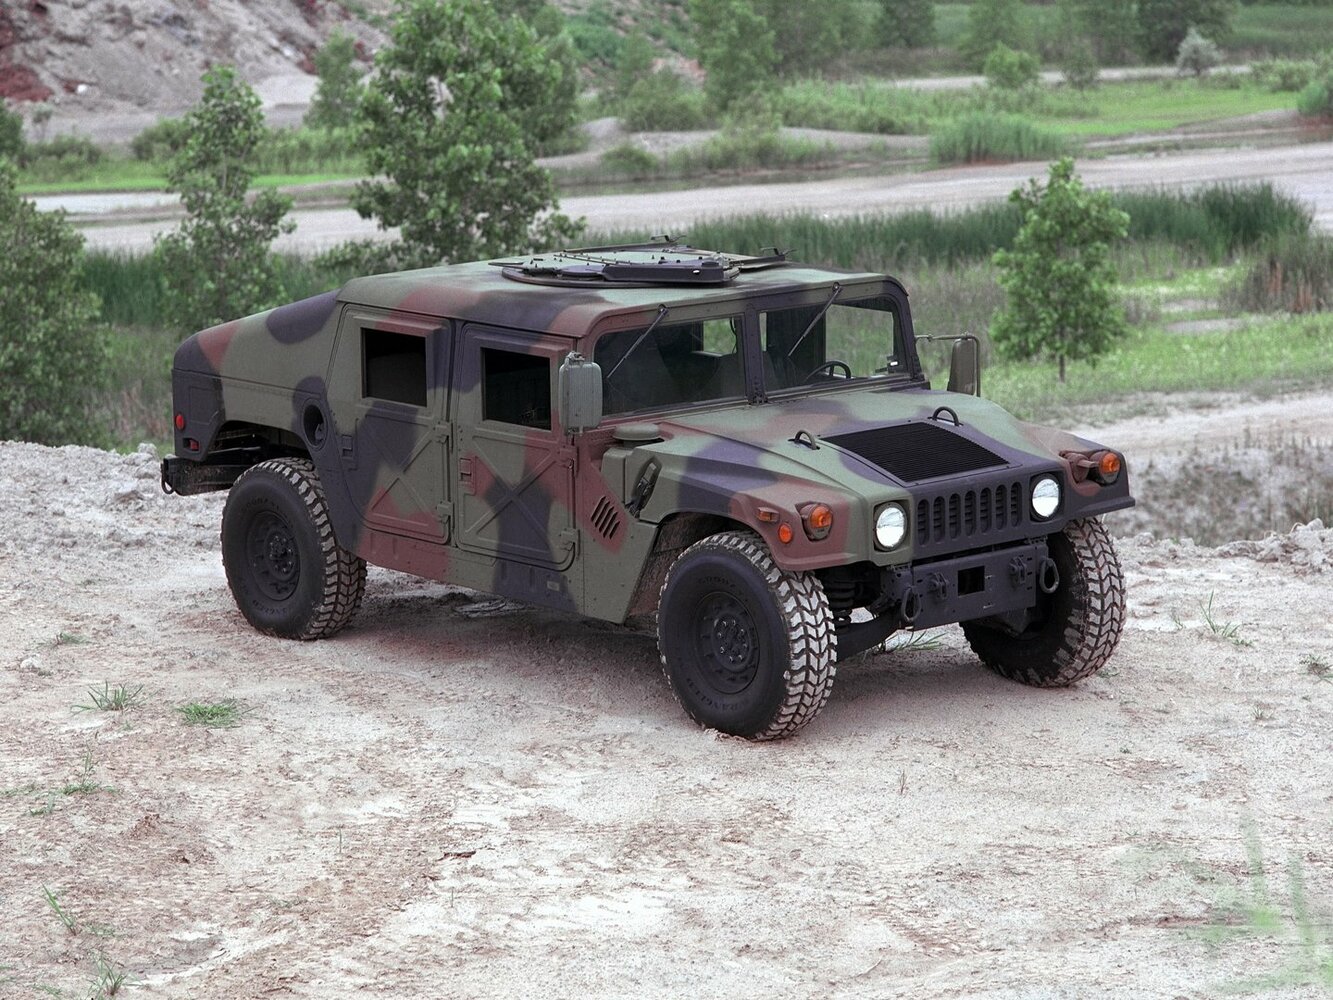 HMMWV (Humvee)